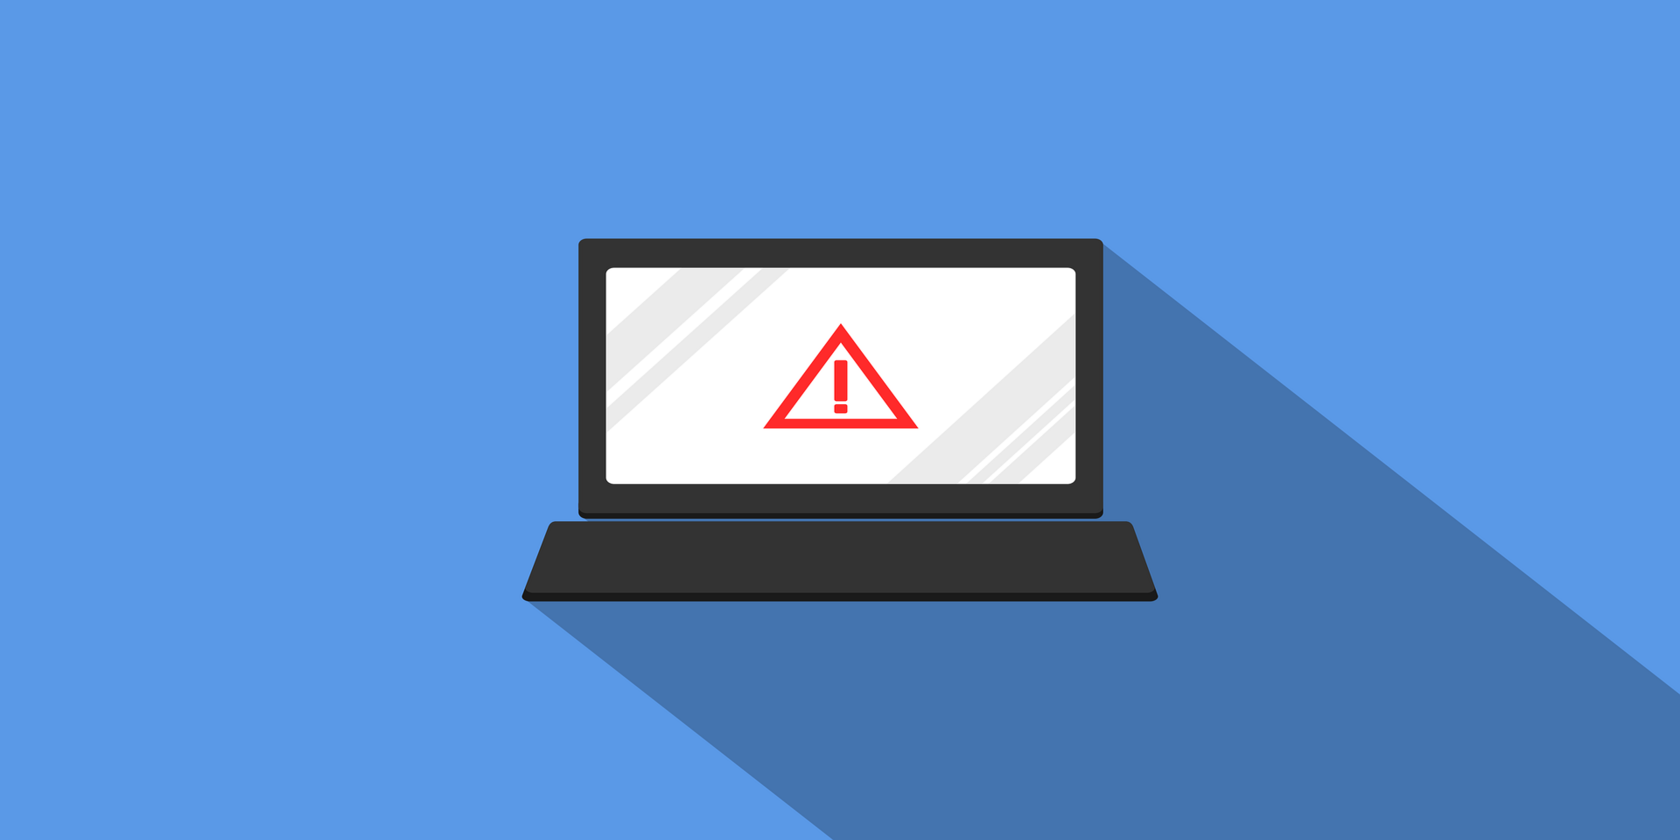 Laptop screen showing warning sign